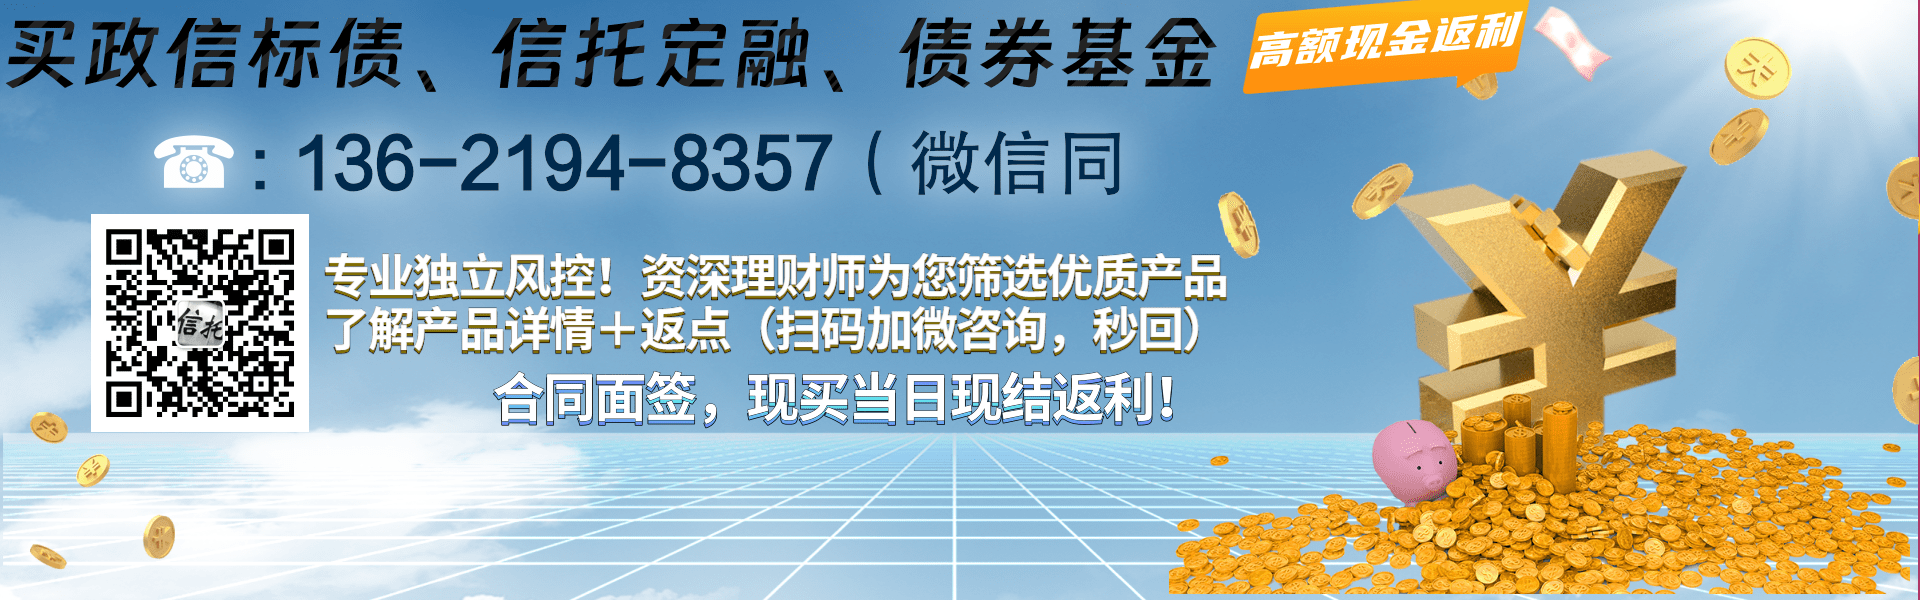 国企信托-XH7号·重庆大足公募债